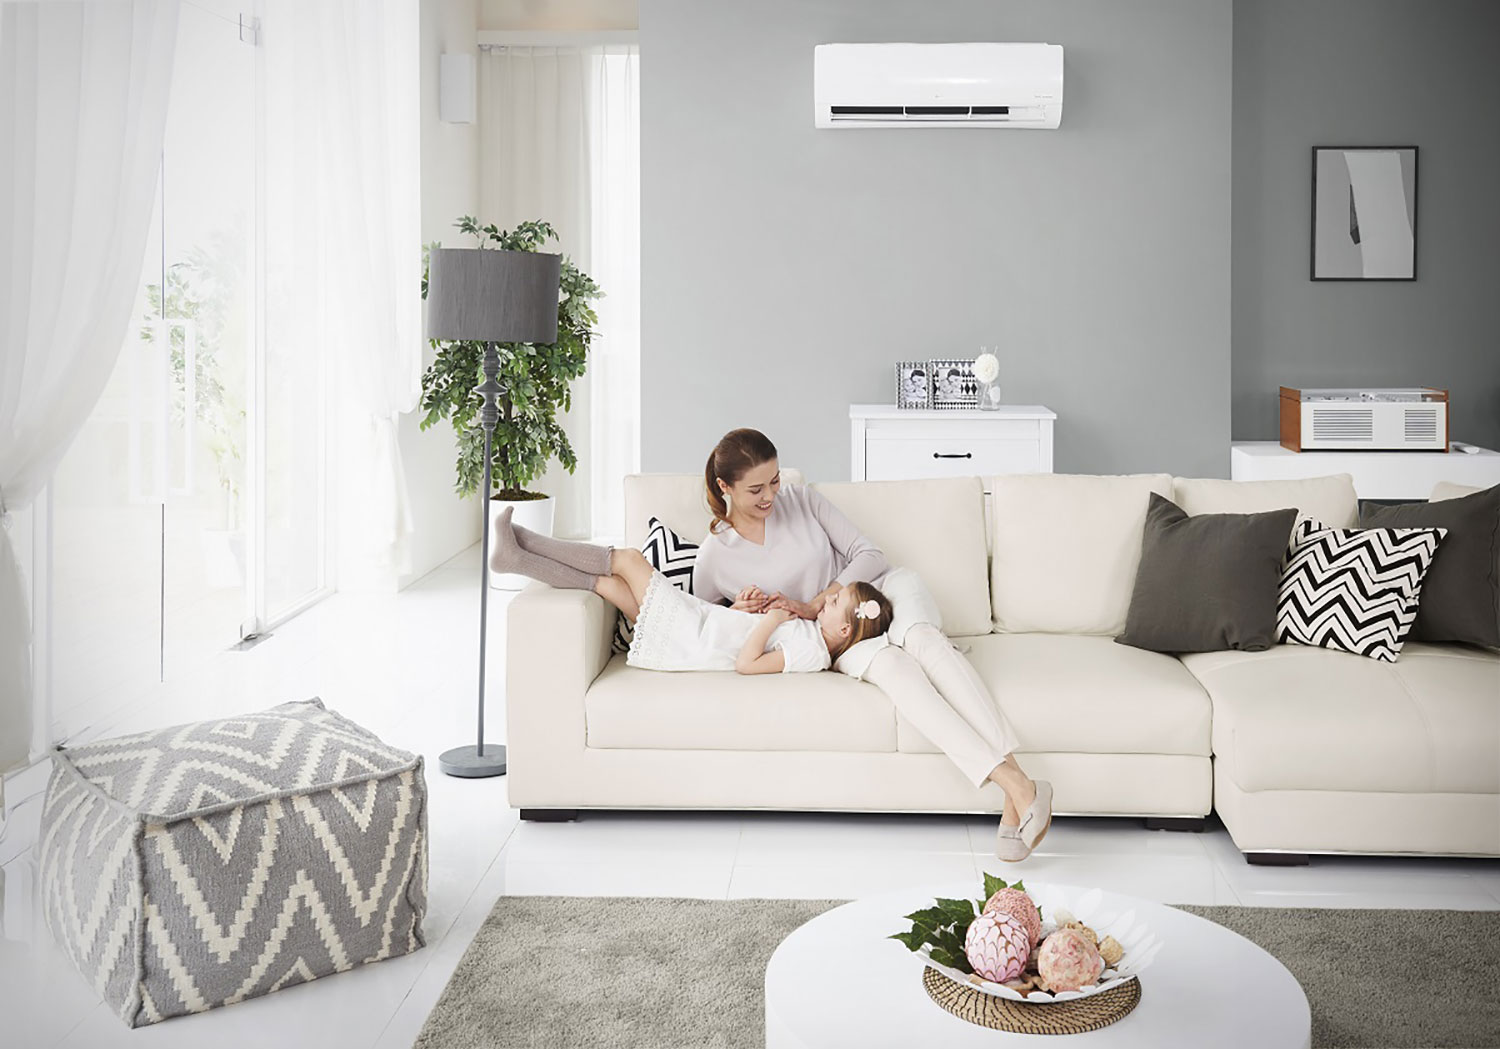 Cuanto cuesta recargar el aire acondicionado de casa